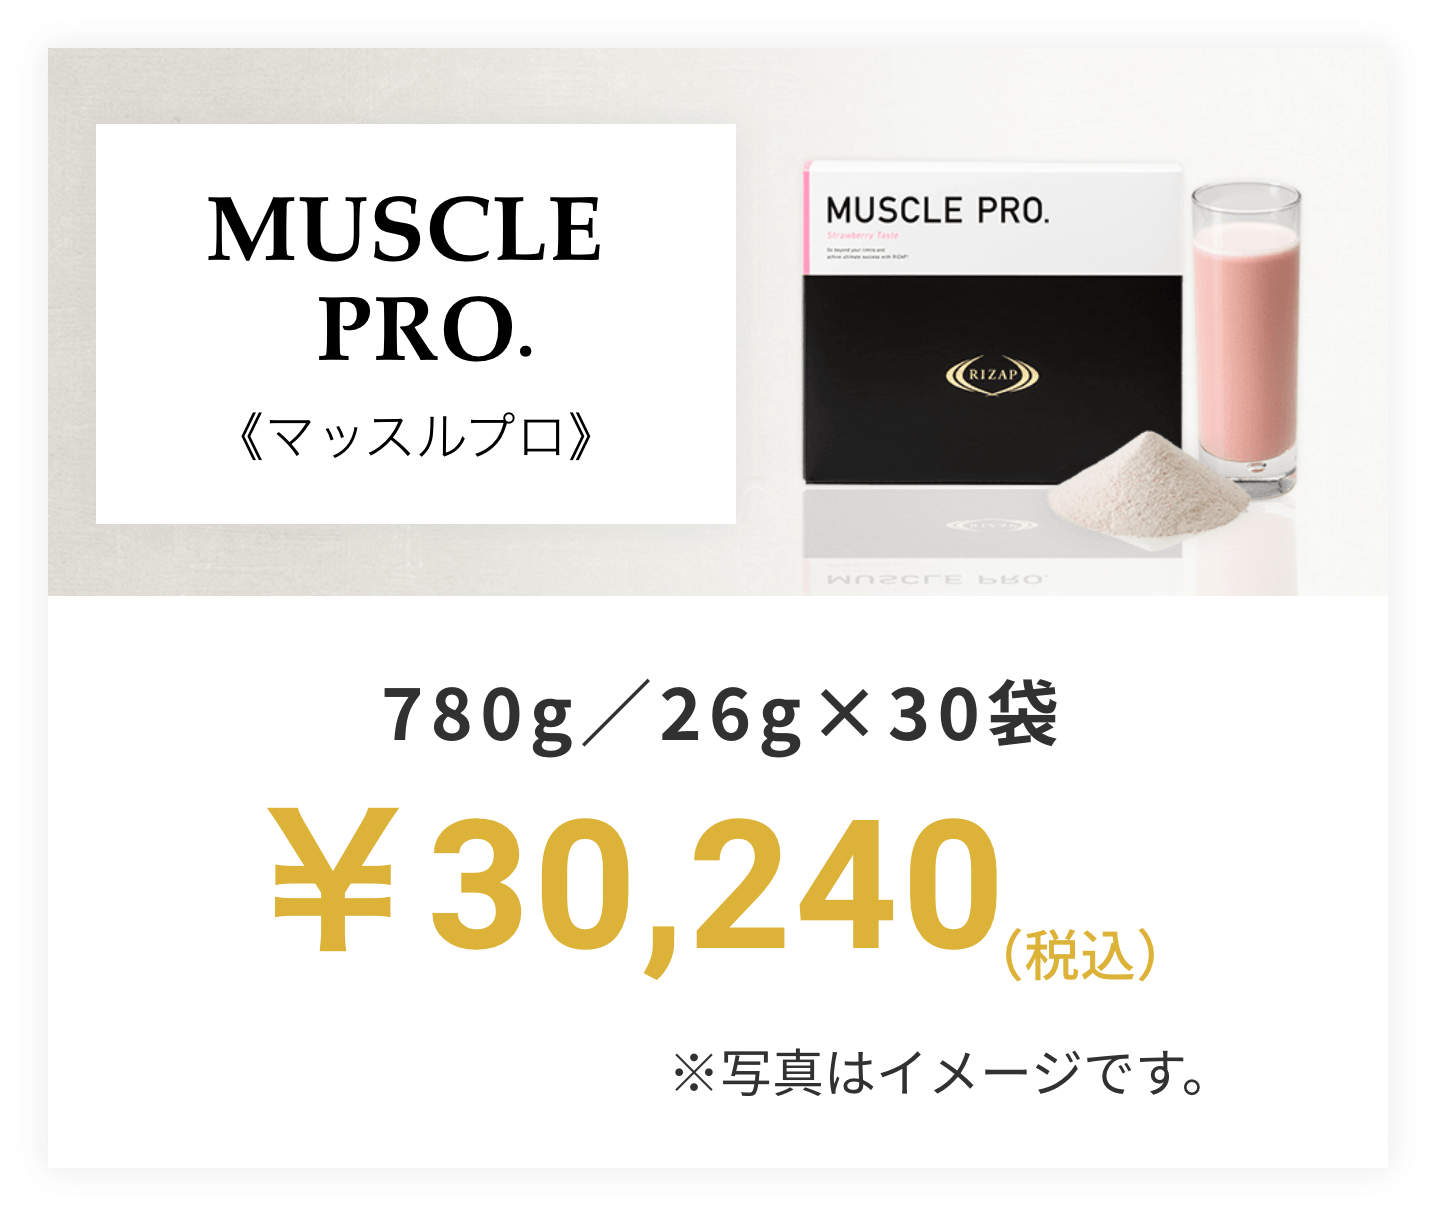 ライザップ MUSCLE PRO. 780g（26g×30袋）チョコレート風味 プロテイン-